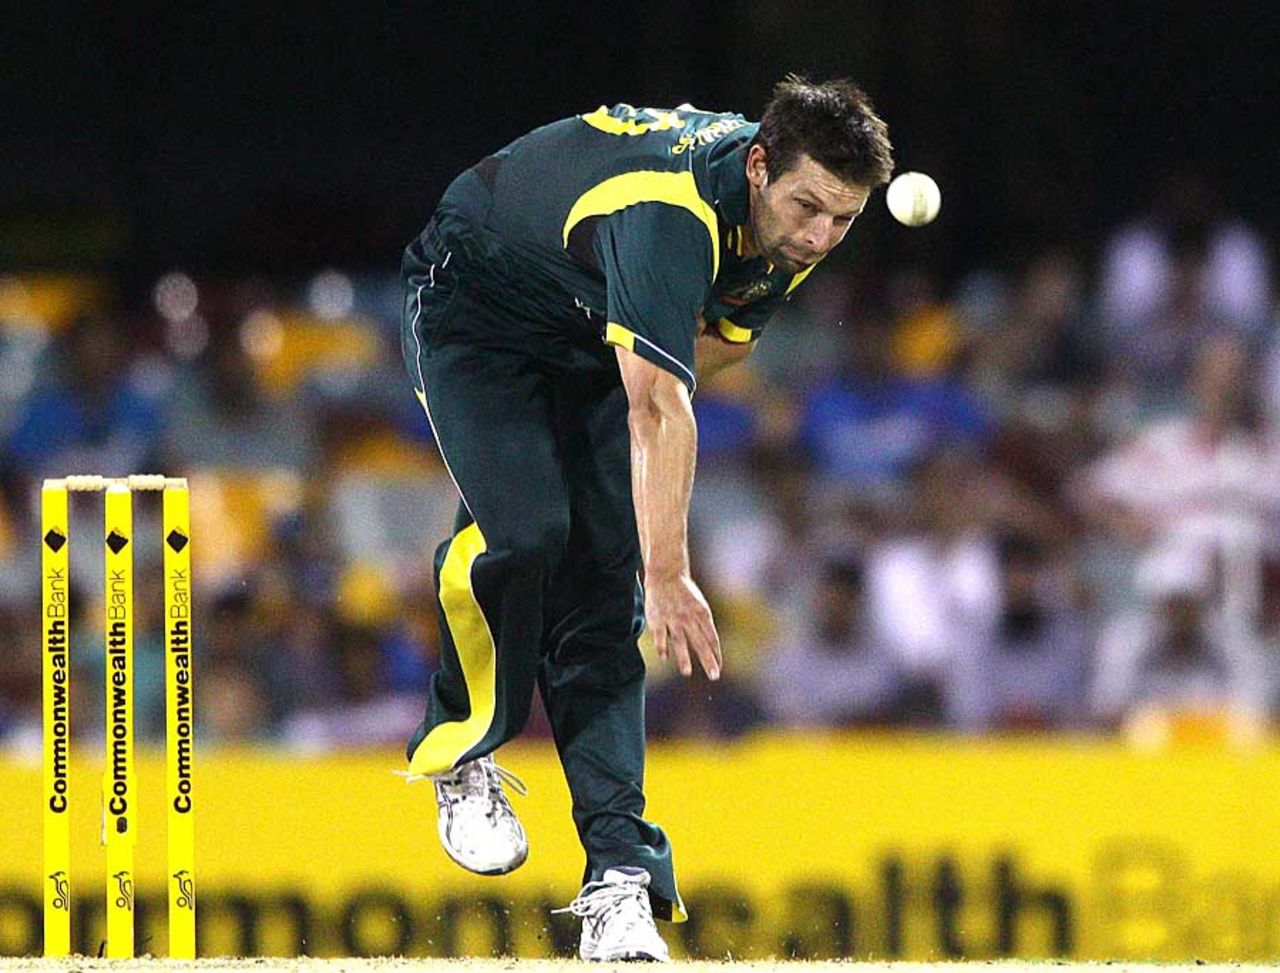 Ben Hilfenhaus sends one down, Australia v India, CB Series, Brisbane, February 19, 2012